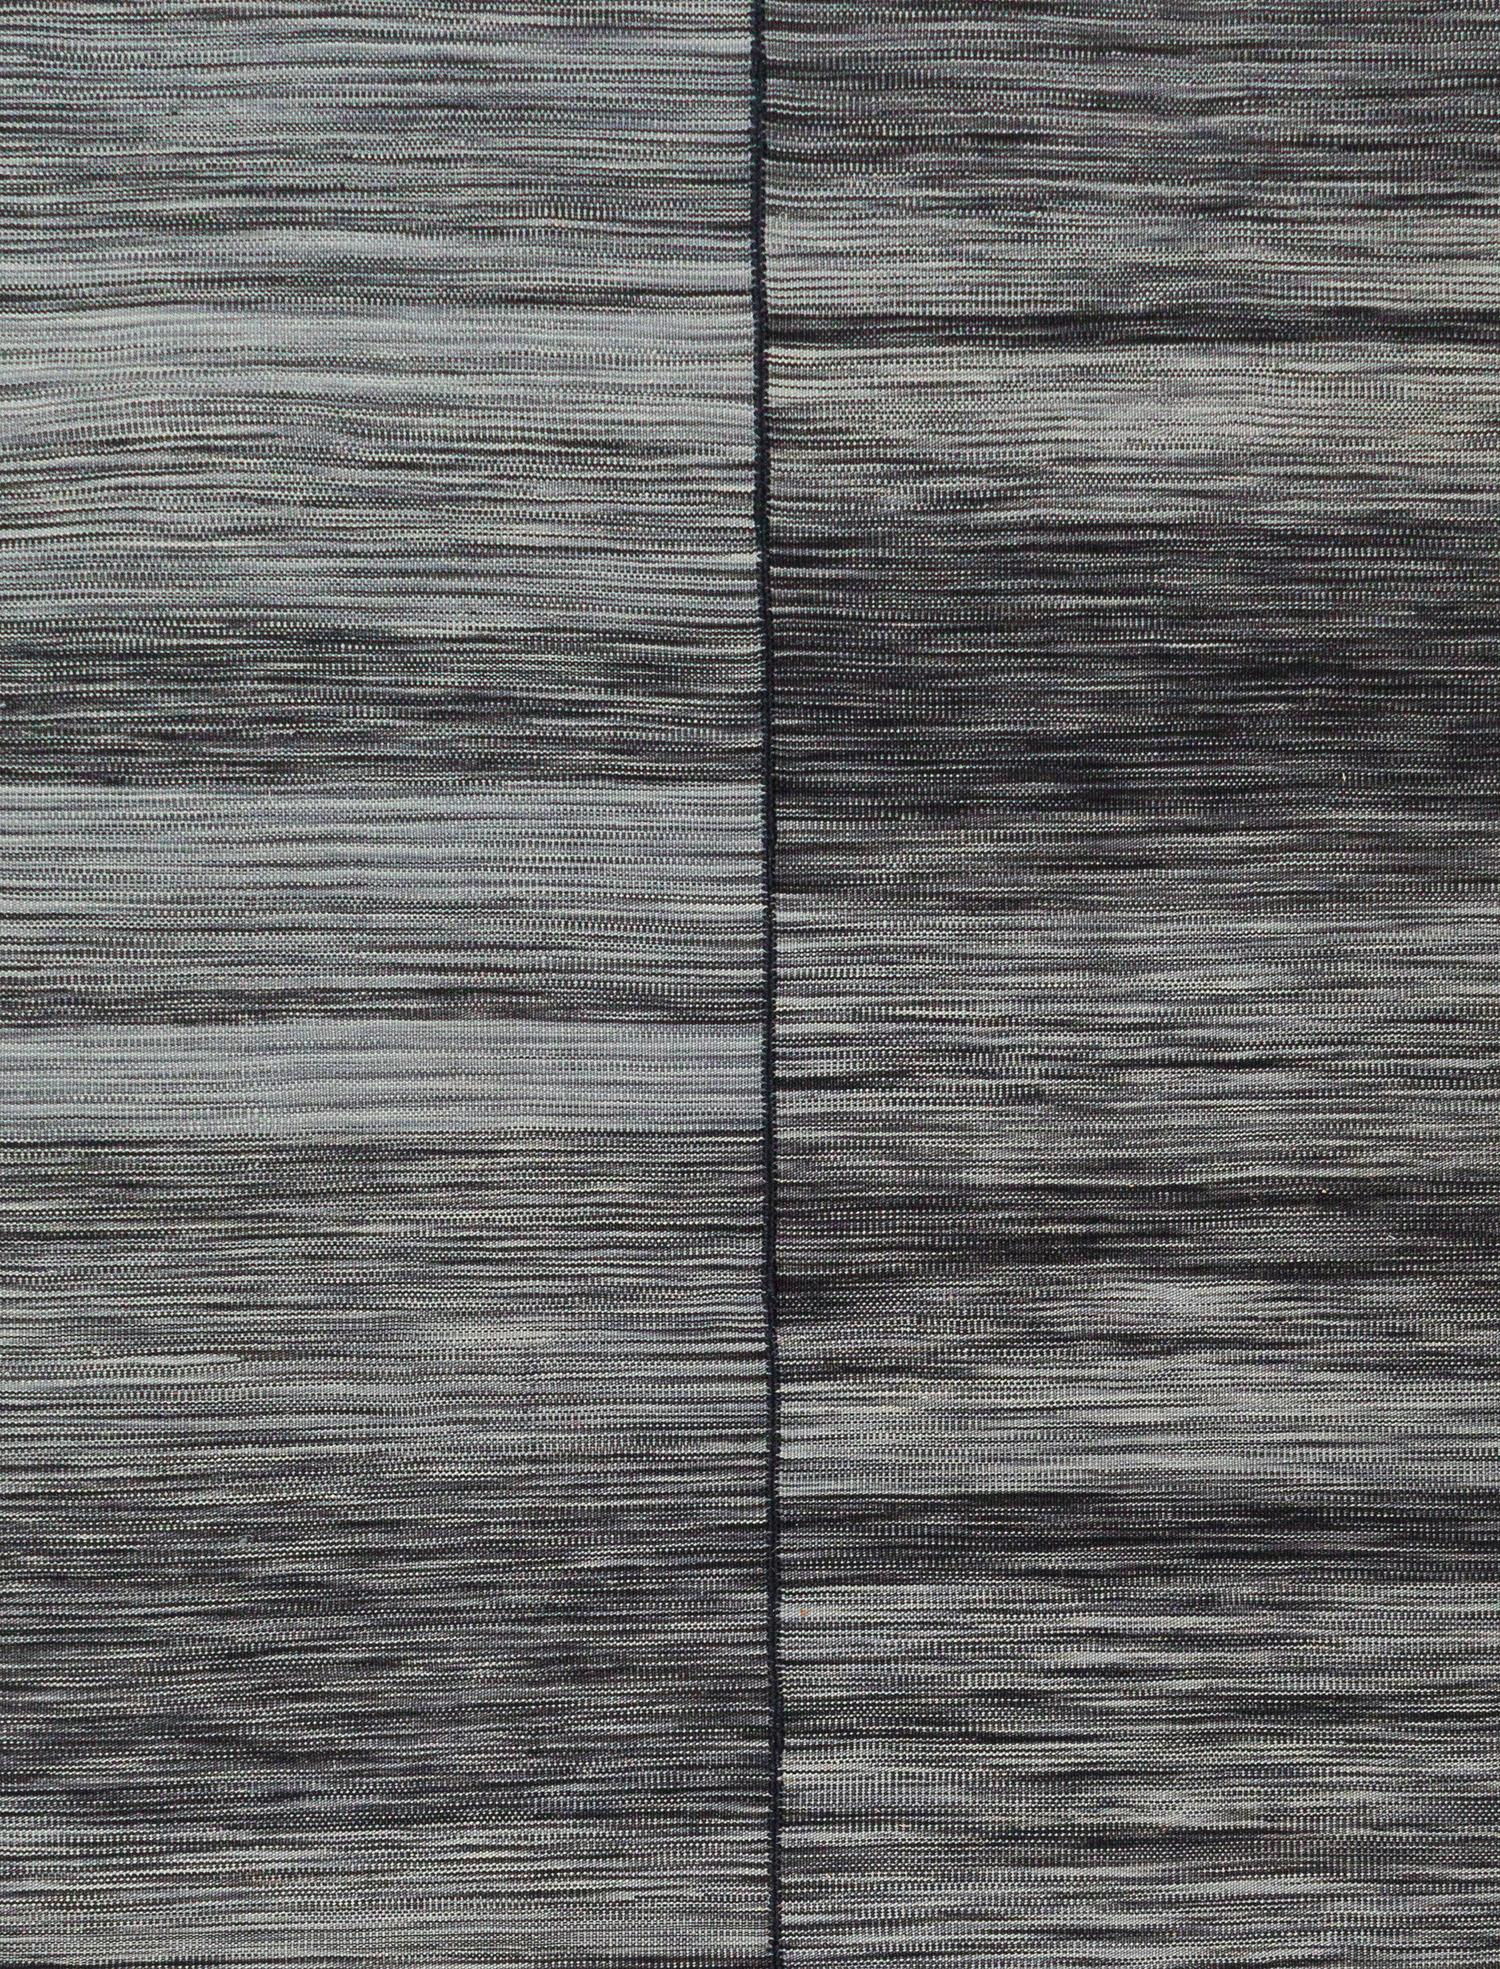 Dieser wunderschöne Flachgewebeteppich hat durchgehend schwarze Farbtöne.  Sie ist handgefertigt aus handgekämmter und handgesponnener Wolle. Die natürlichen Farbstoffe und die handgefertigte Natur verleihen diesem Teppich den schönen Abrieb und die